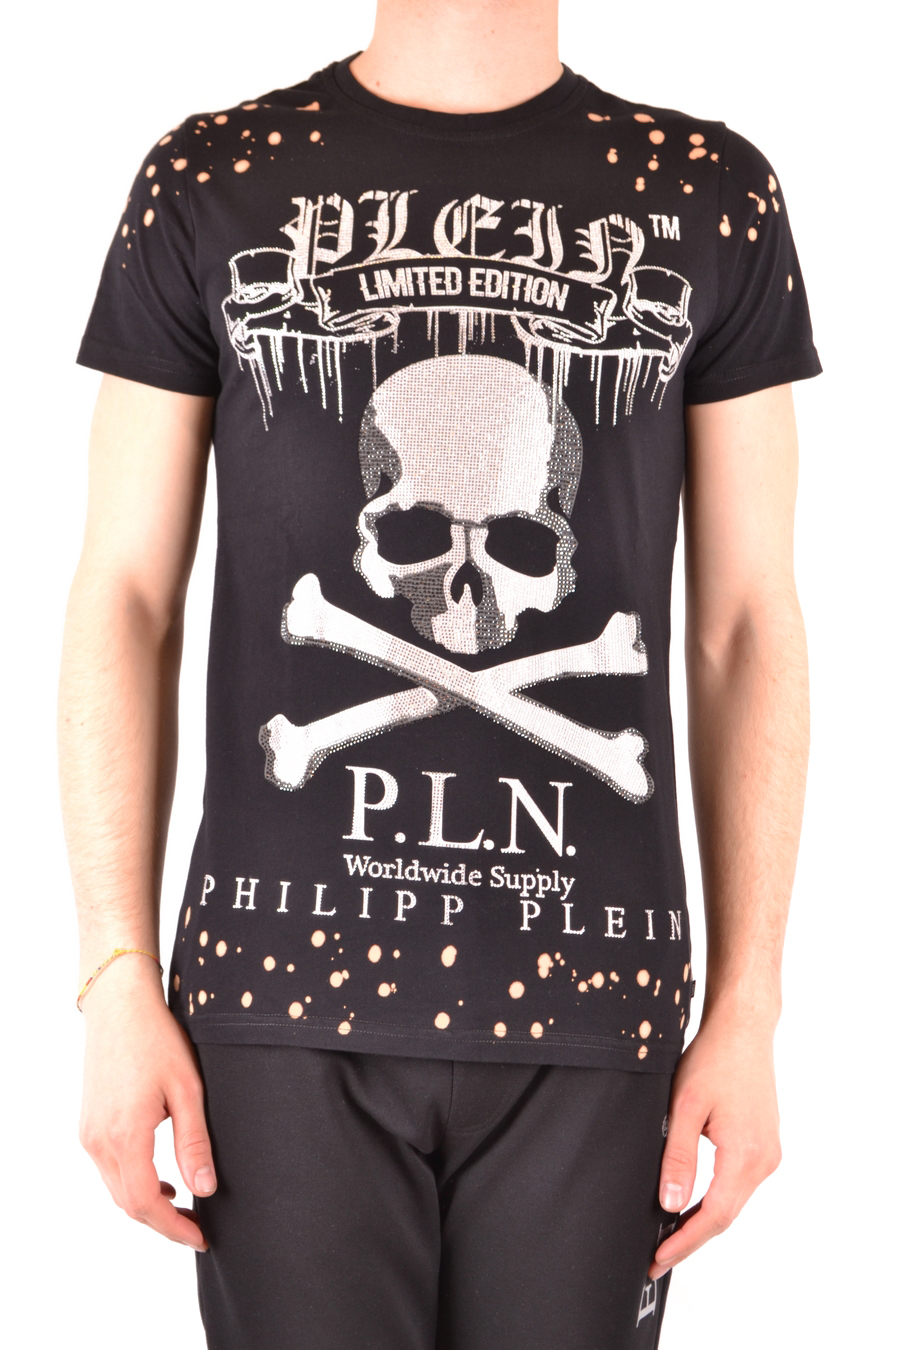 PHILIPP PLEIN T-shirts | ViganoBoutique.com